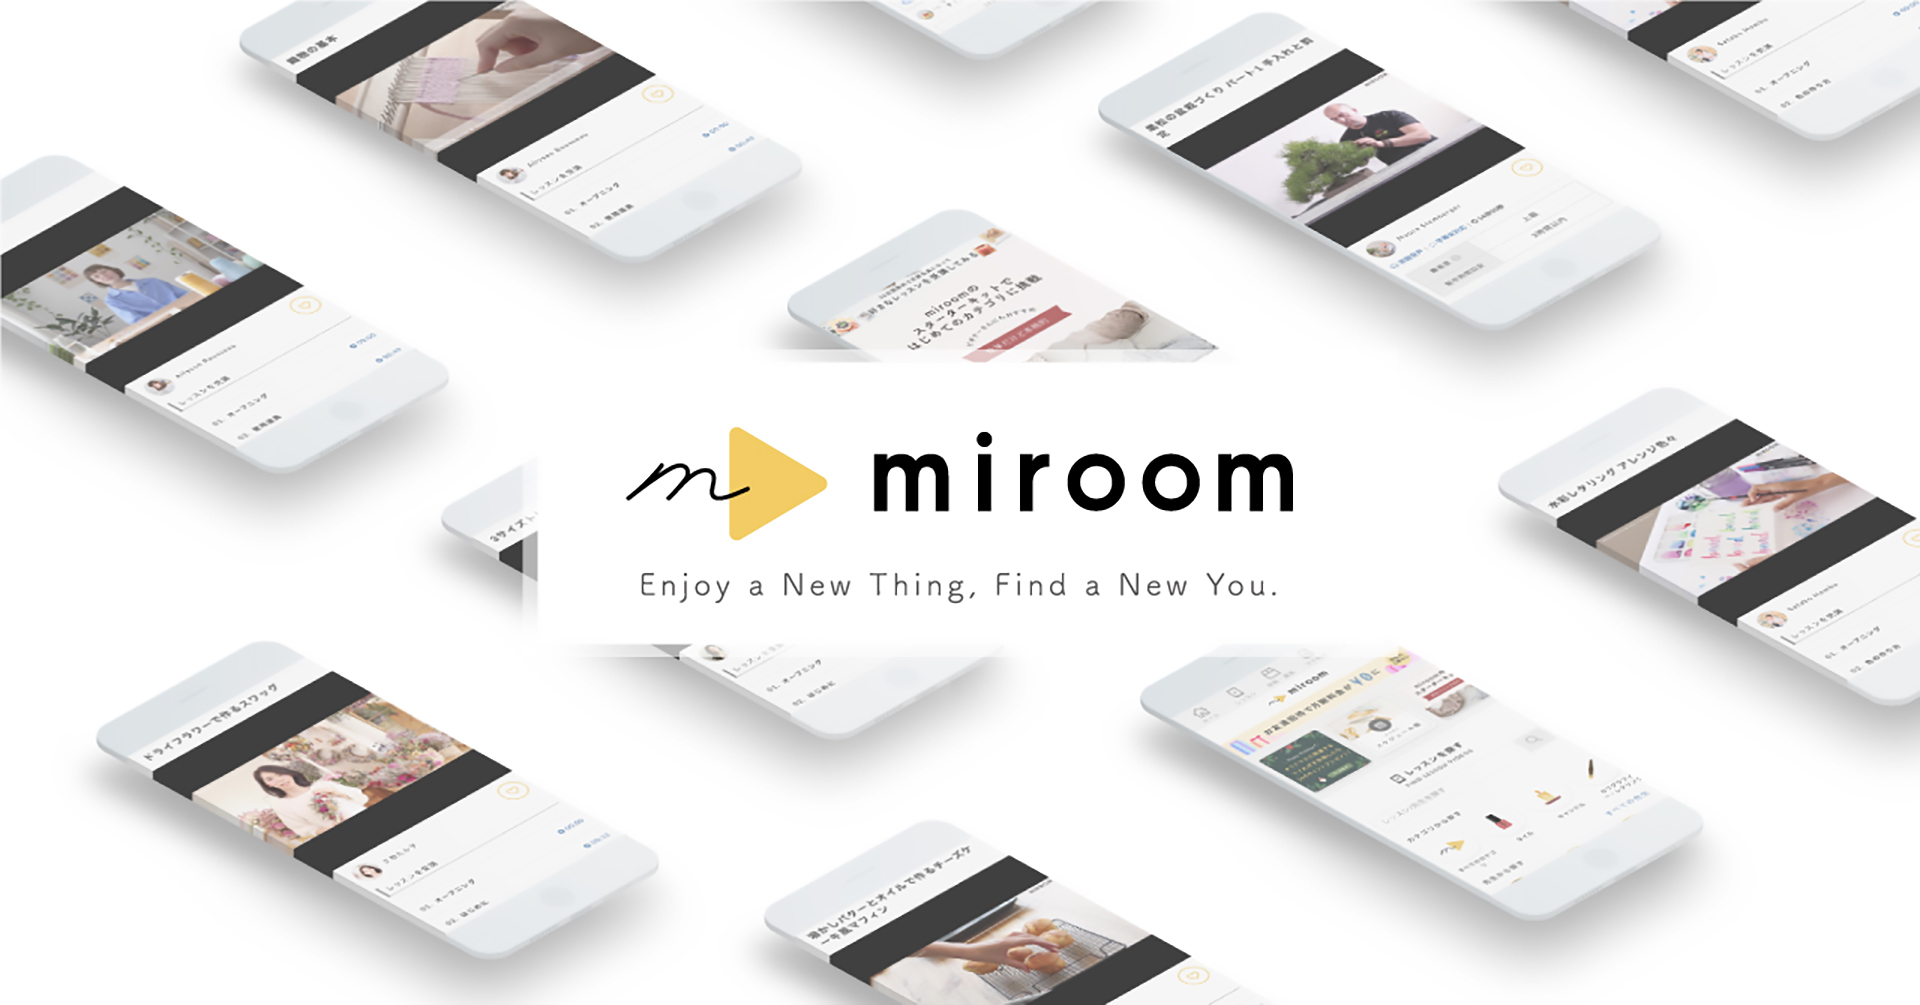 趣味のオンラインレッスンサービス『miroom』を運営する株式会社ミコリーが、総額2億円の資金調達を実施しました。